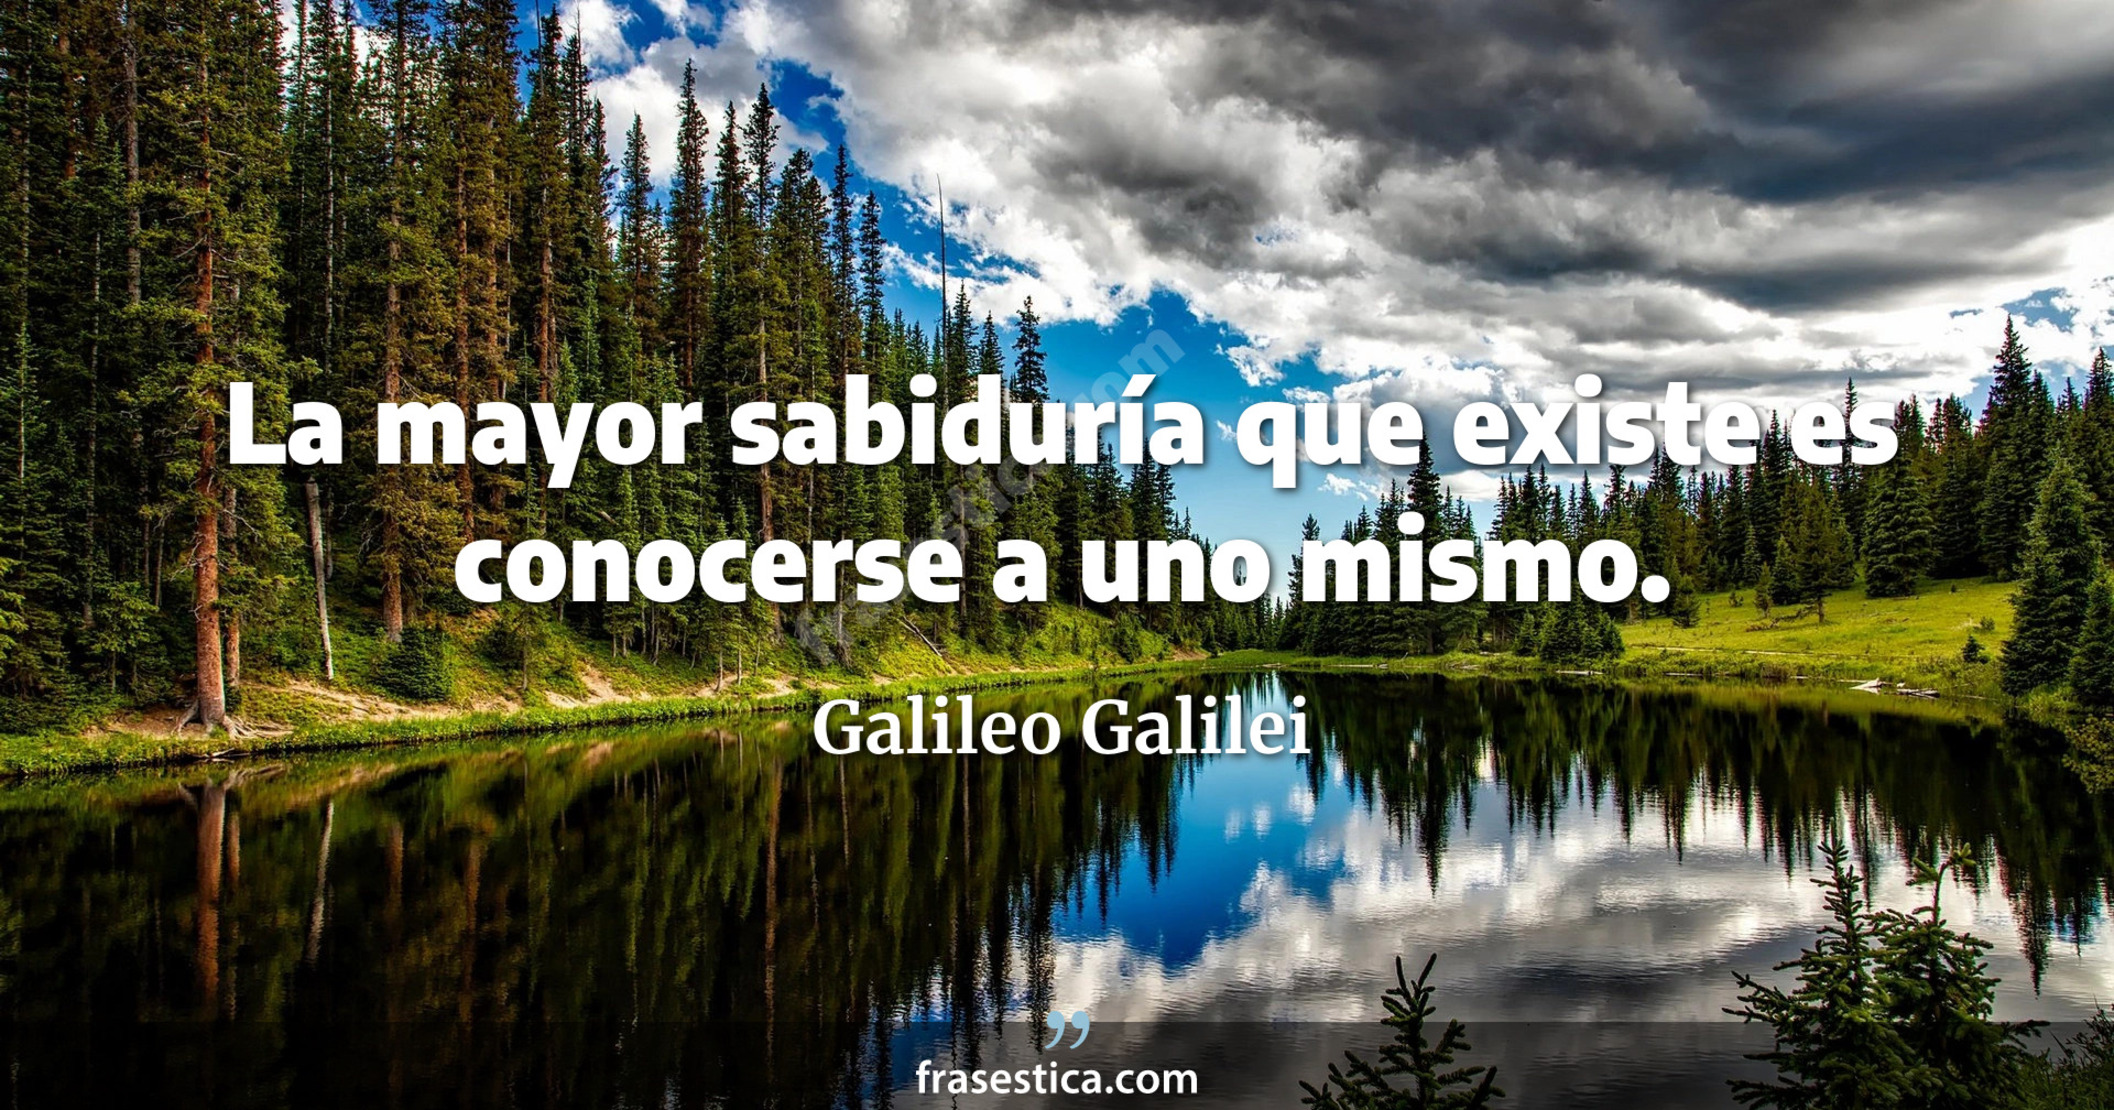 La mayor sabiduría que existe es conocerse a uno mismo. - Galileo Galilei